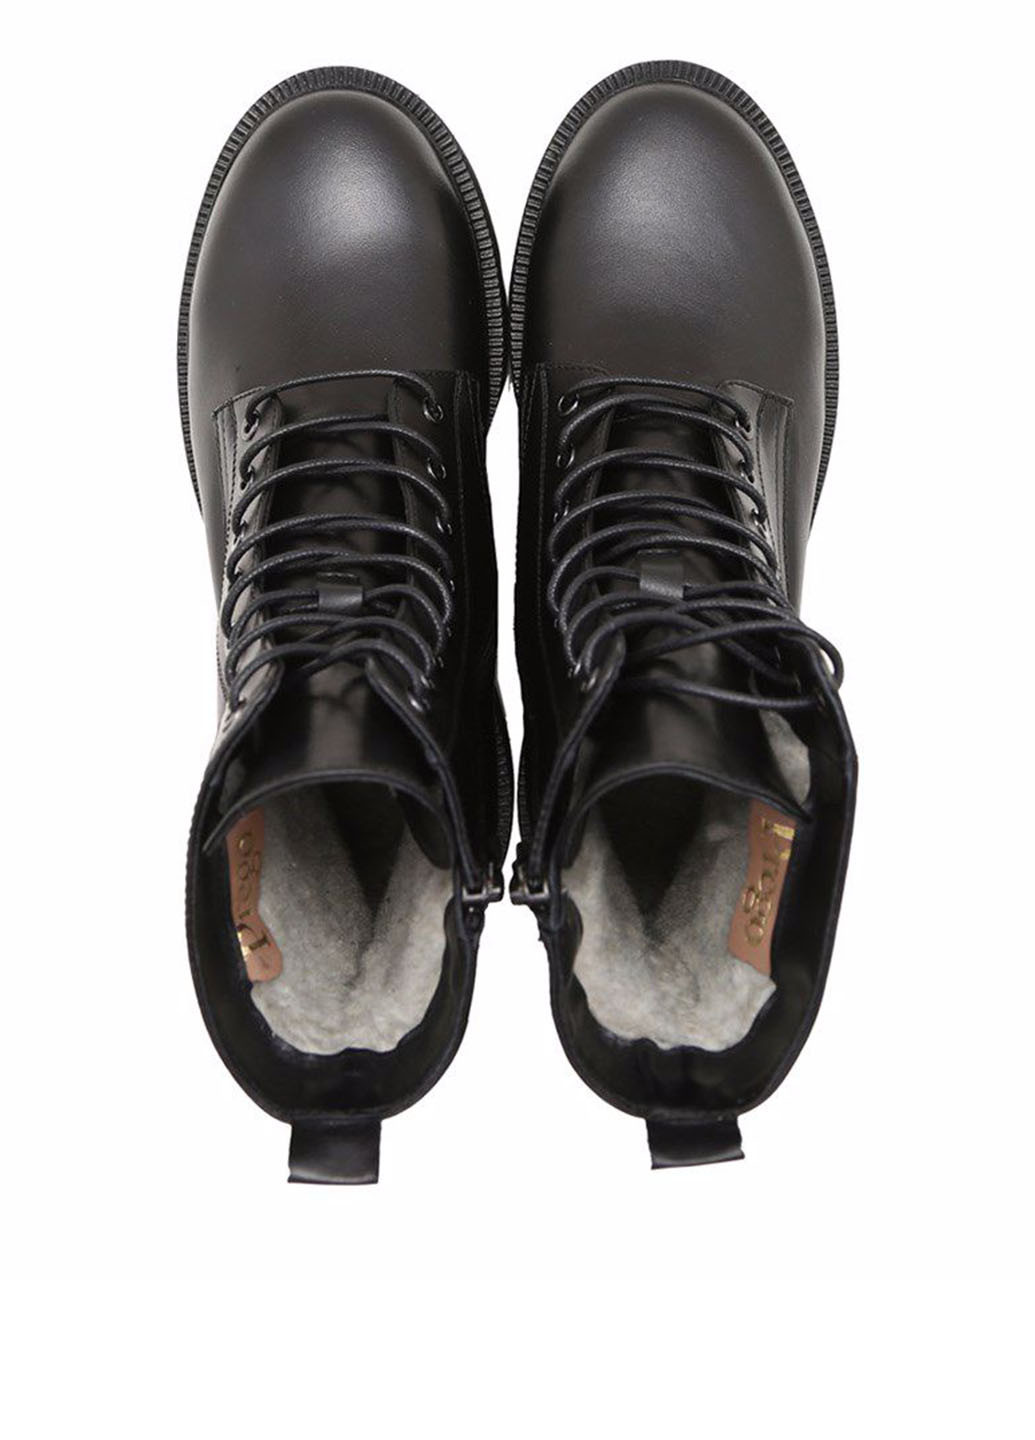 Зимние ботинки Prego со шнуровкой